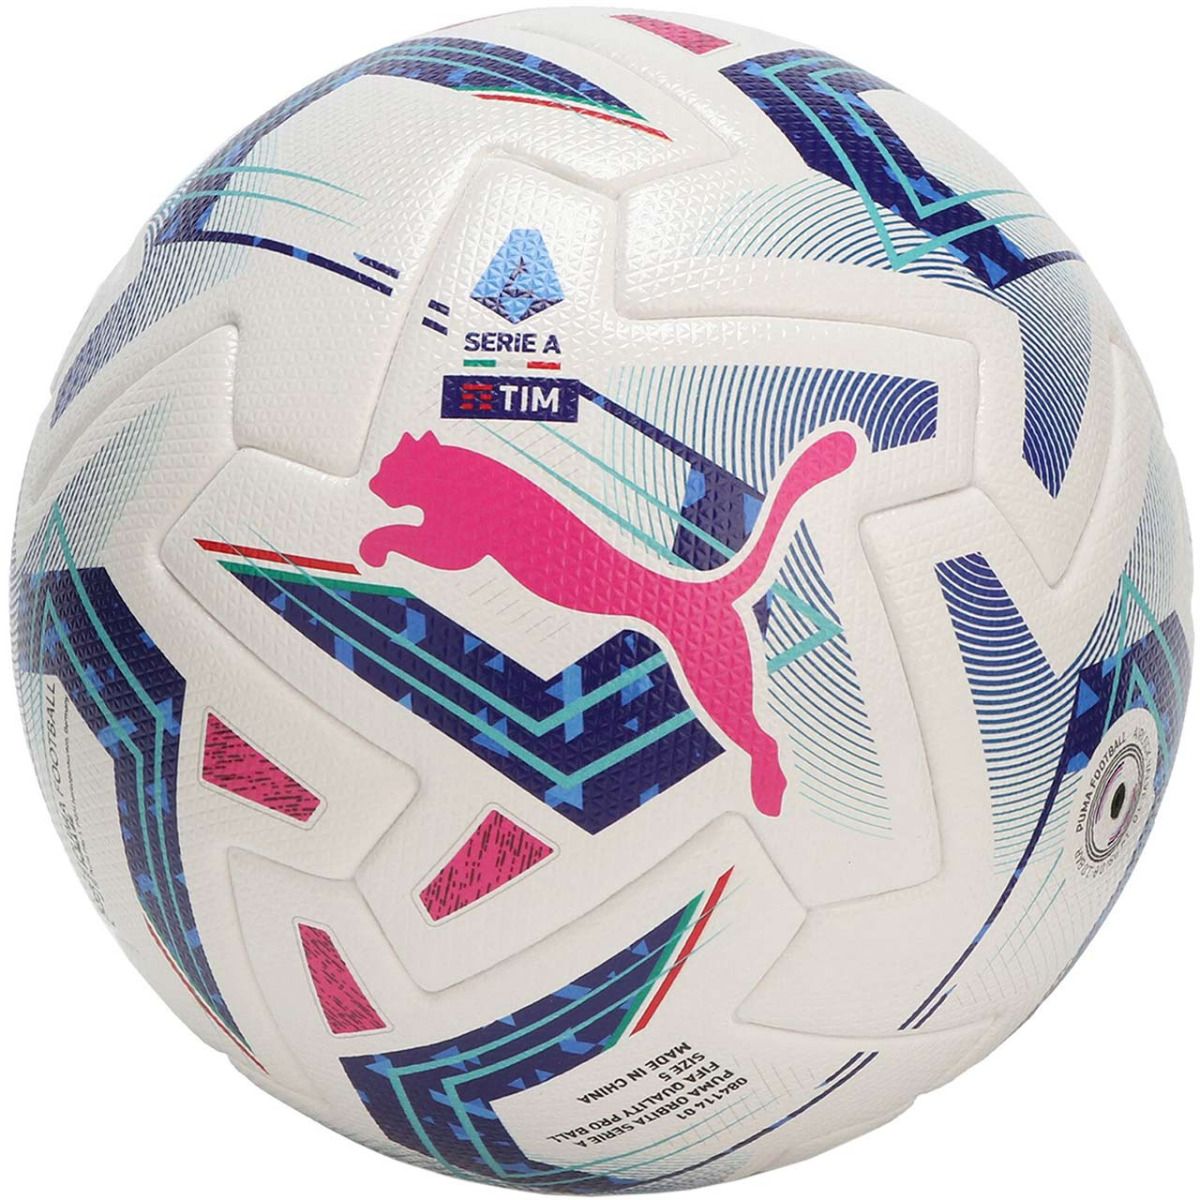 PUMA Fotbalový míč Orbita Serie A FIFA Quality Pro 084114 01